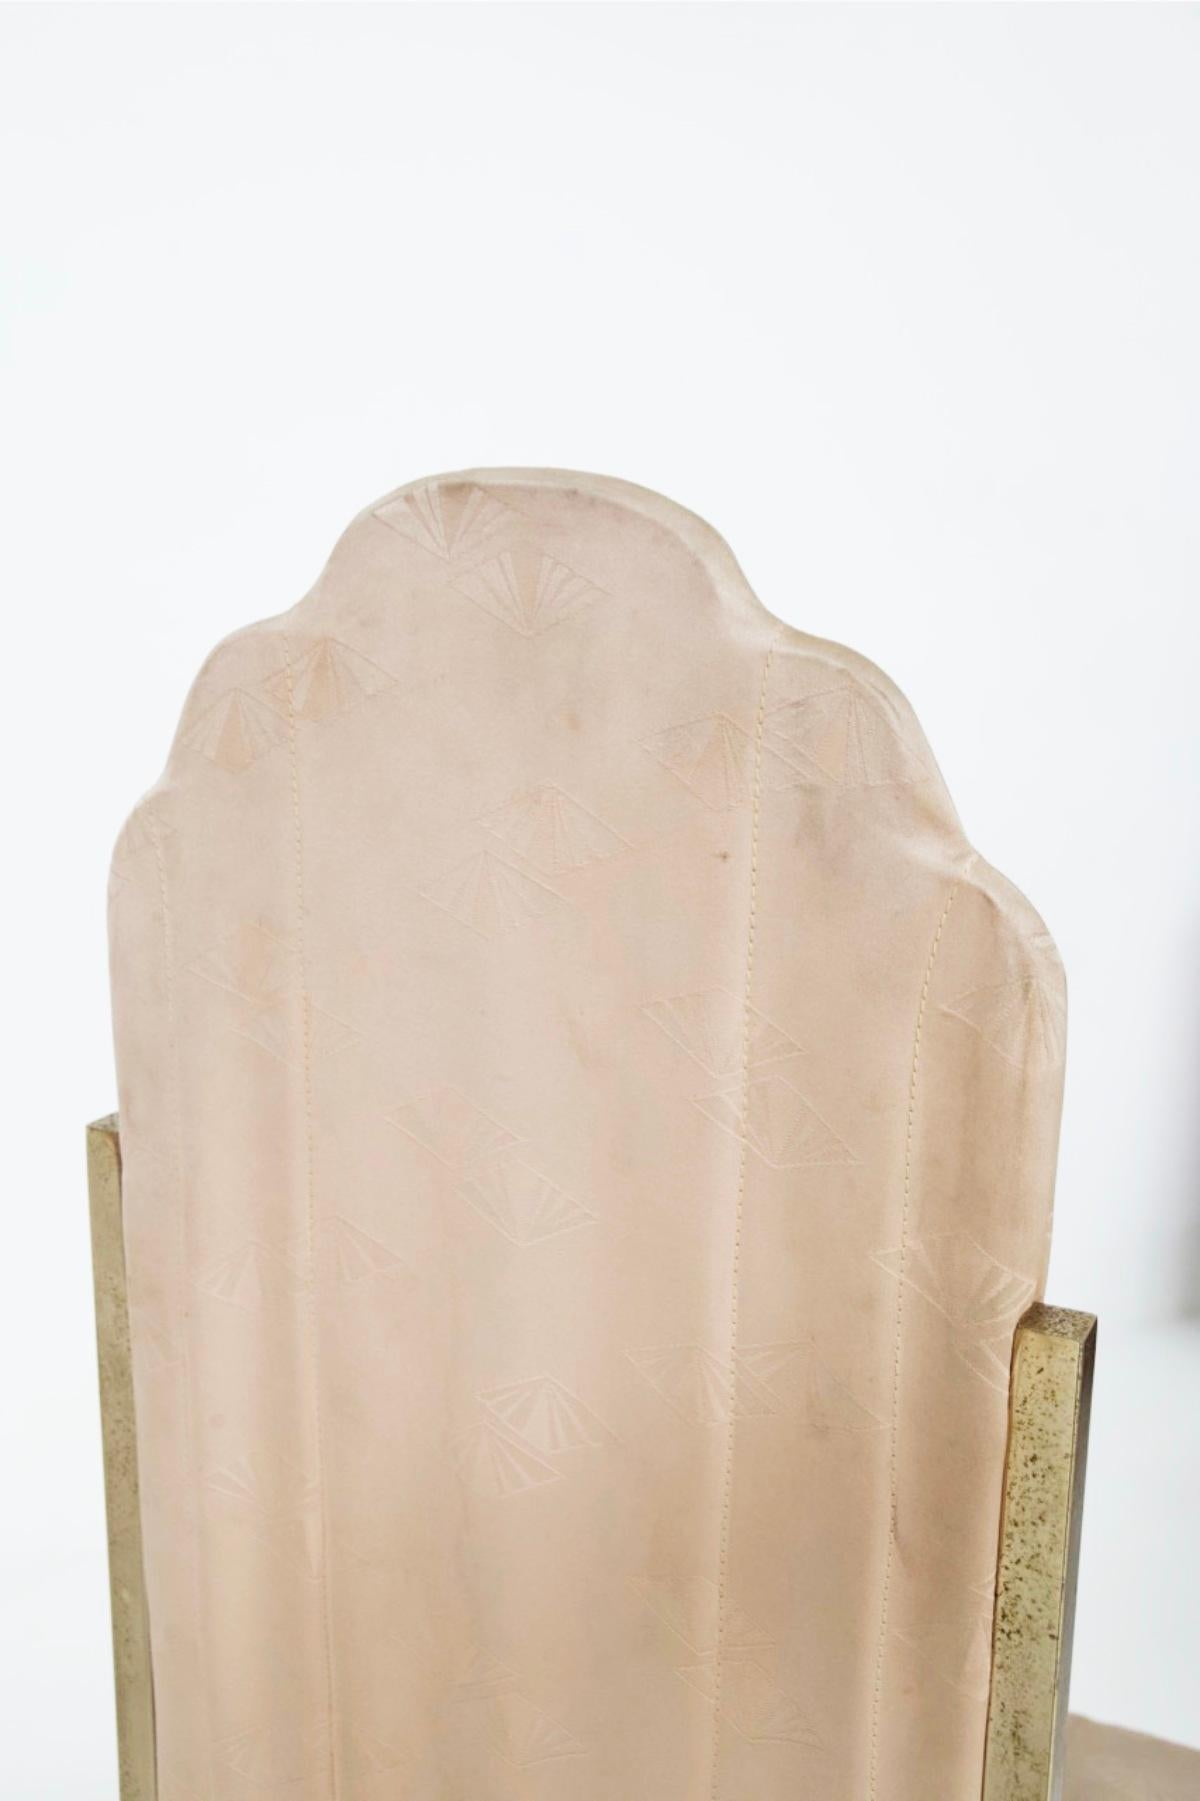 Alain Delon Rare Branded Velvet Chairs 2